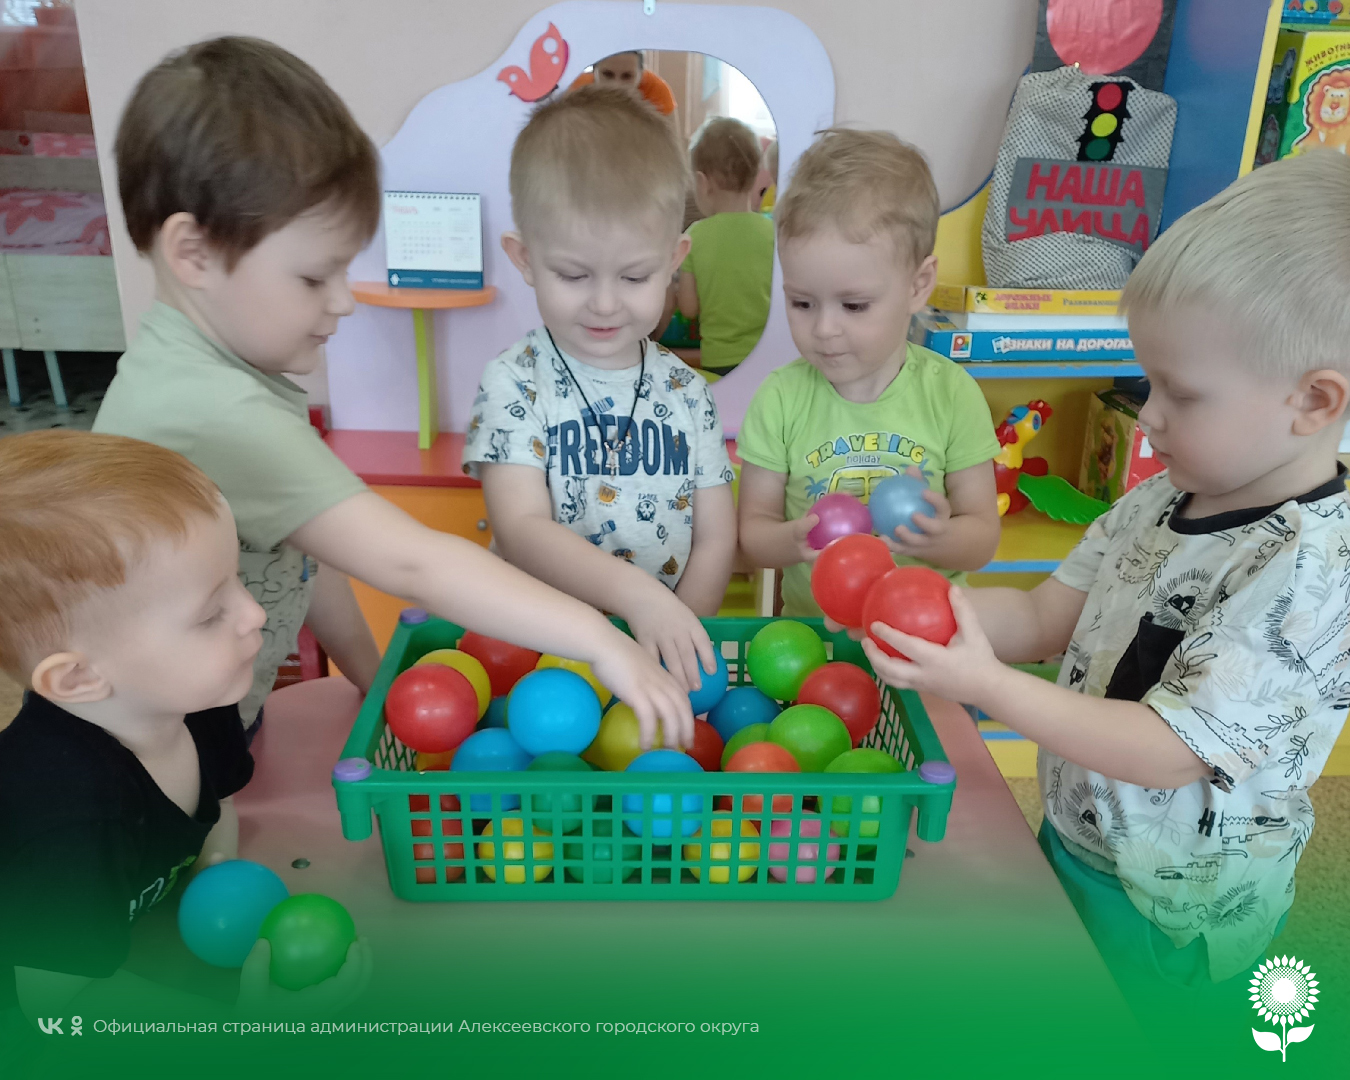 В детских садах Алексеевского городского округа прошёл тематический день, посвященный забавам и играм с мячом.